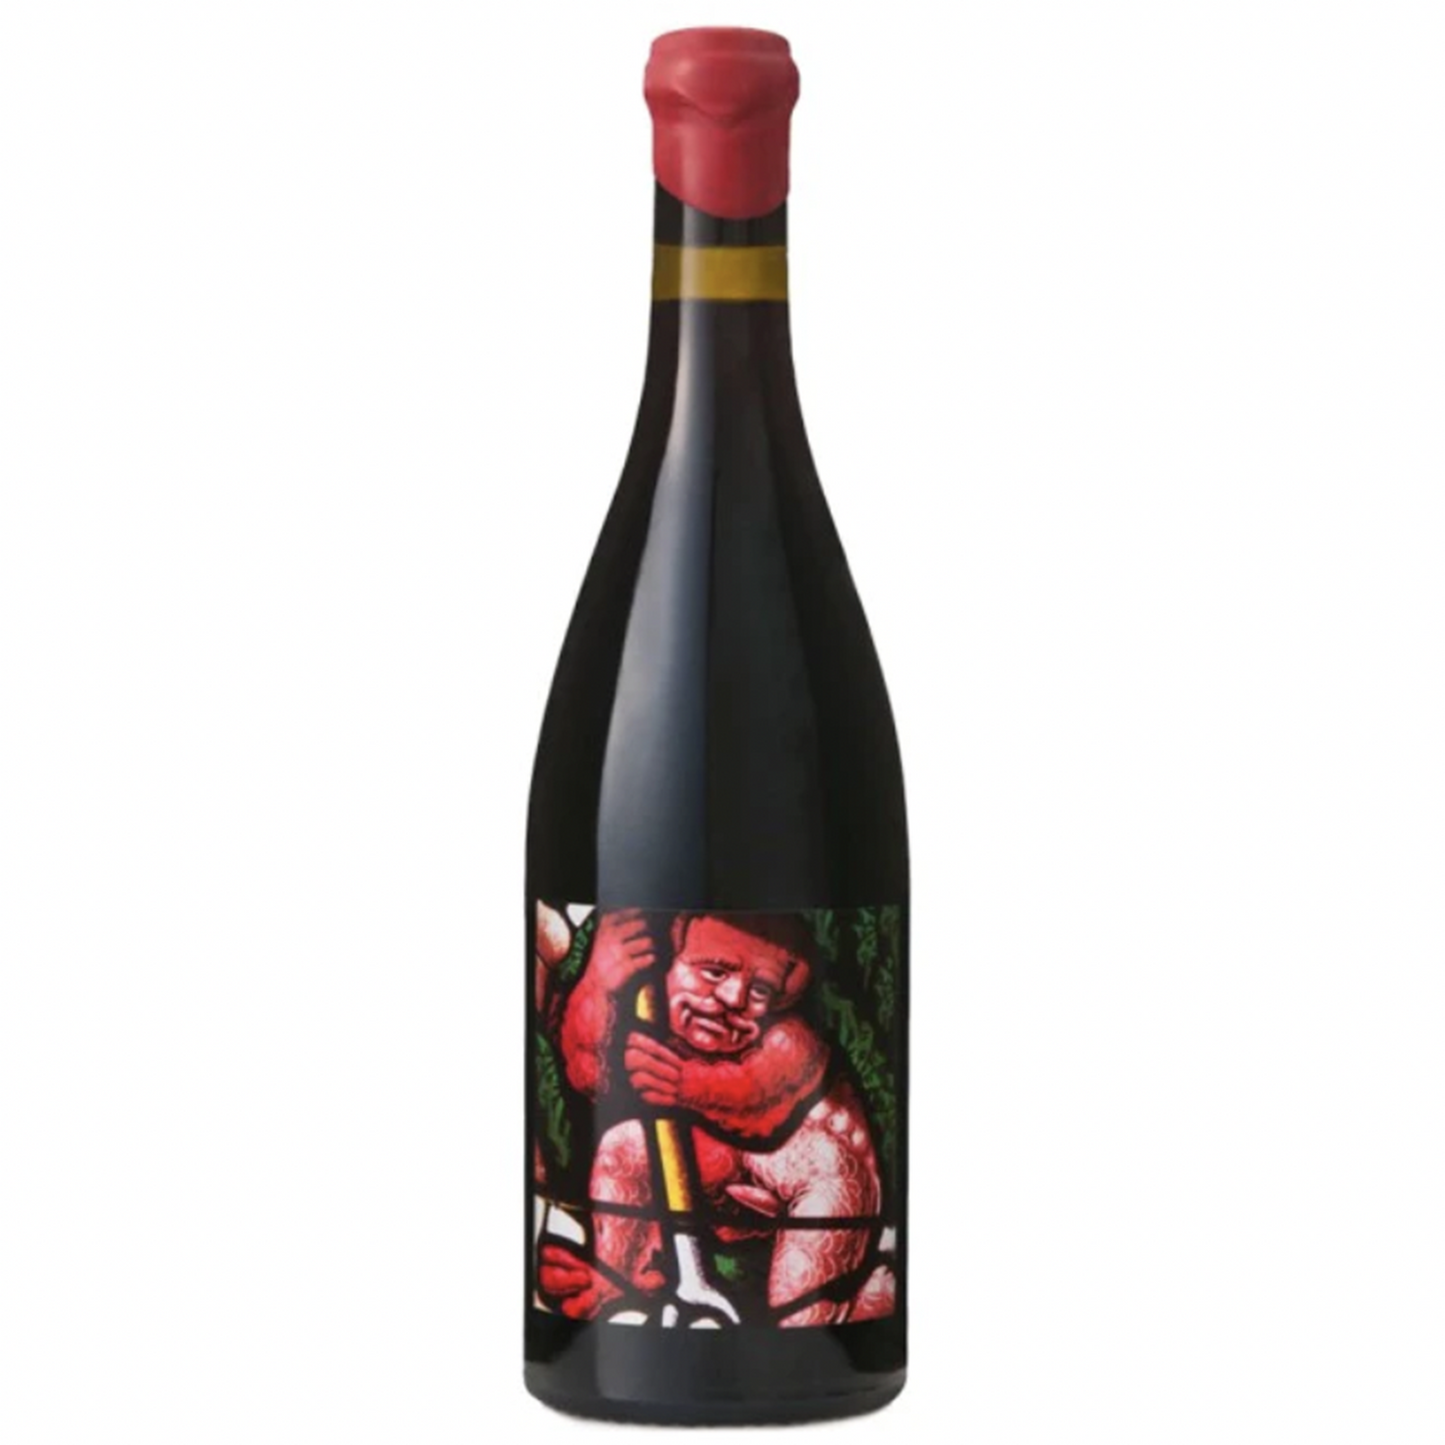 Domaine de L'Ecu, 'Mephisto' Vin de France 2015 (750 ml)